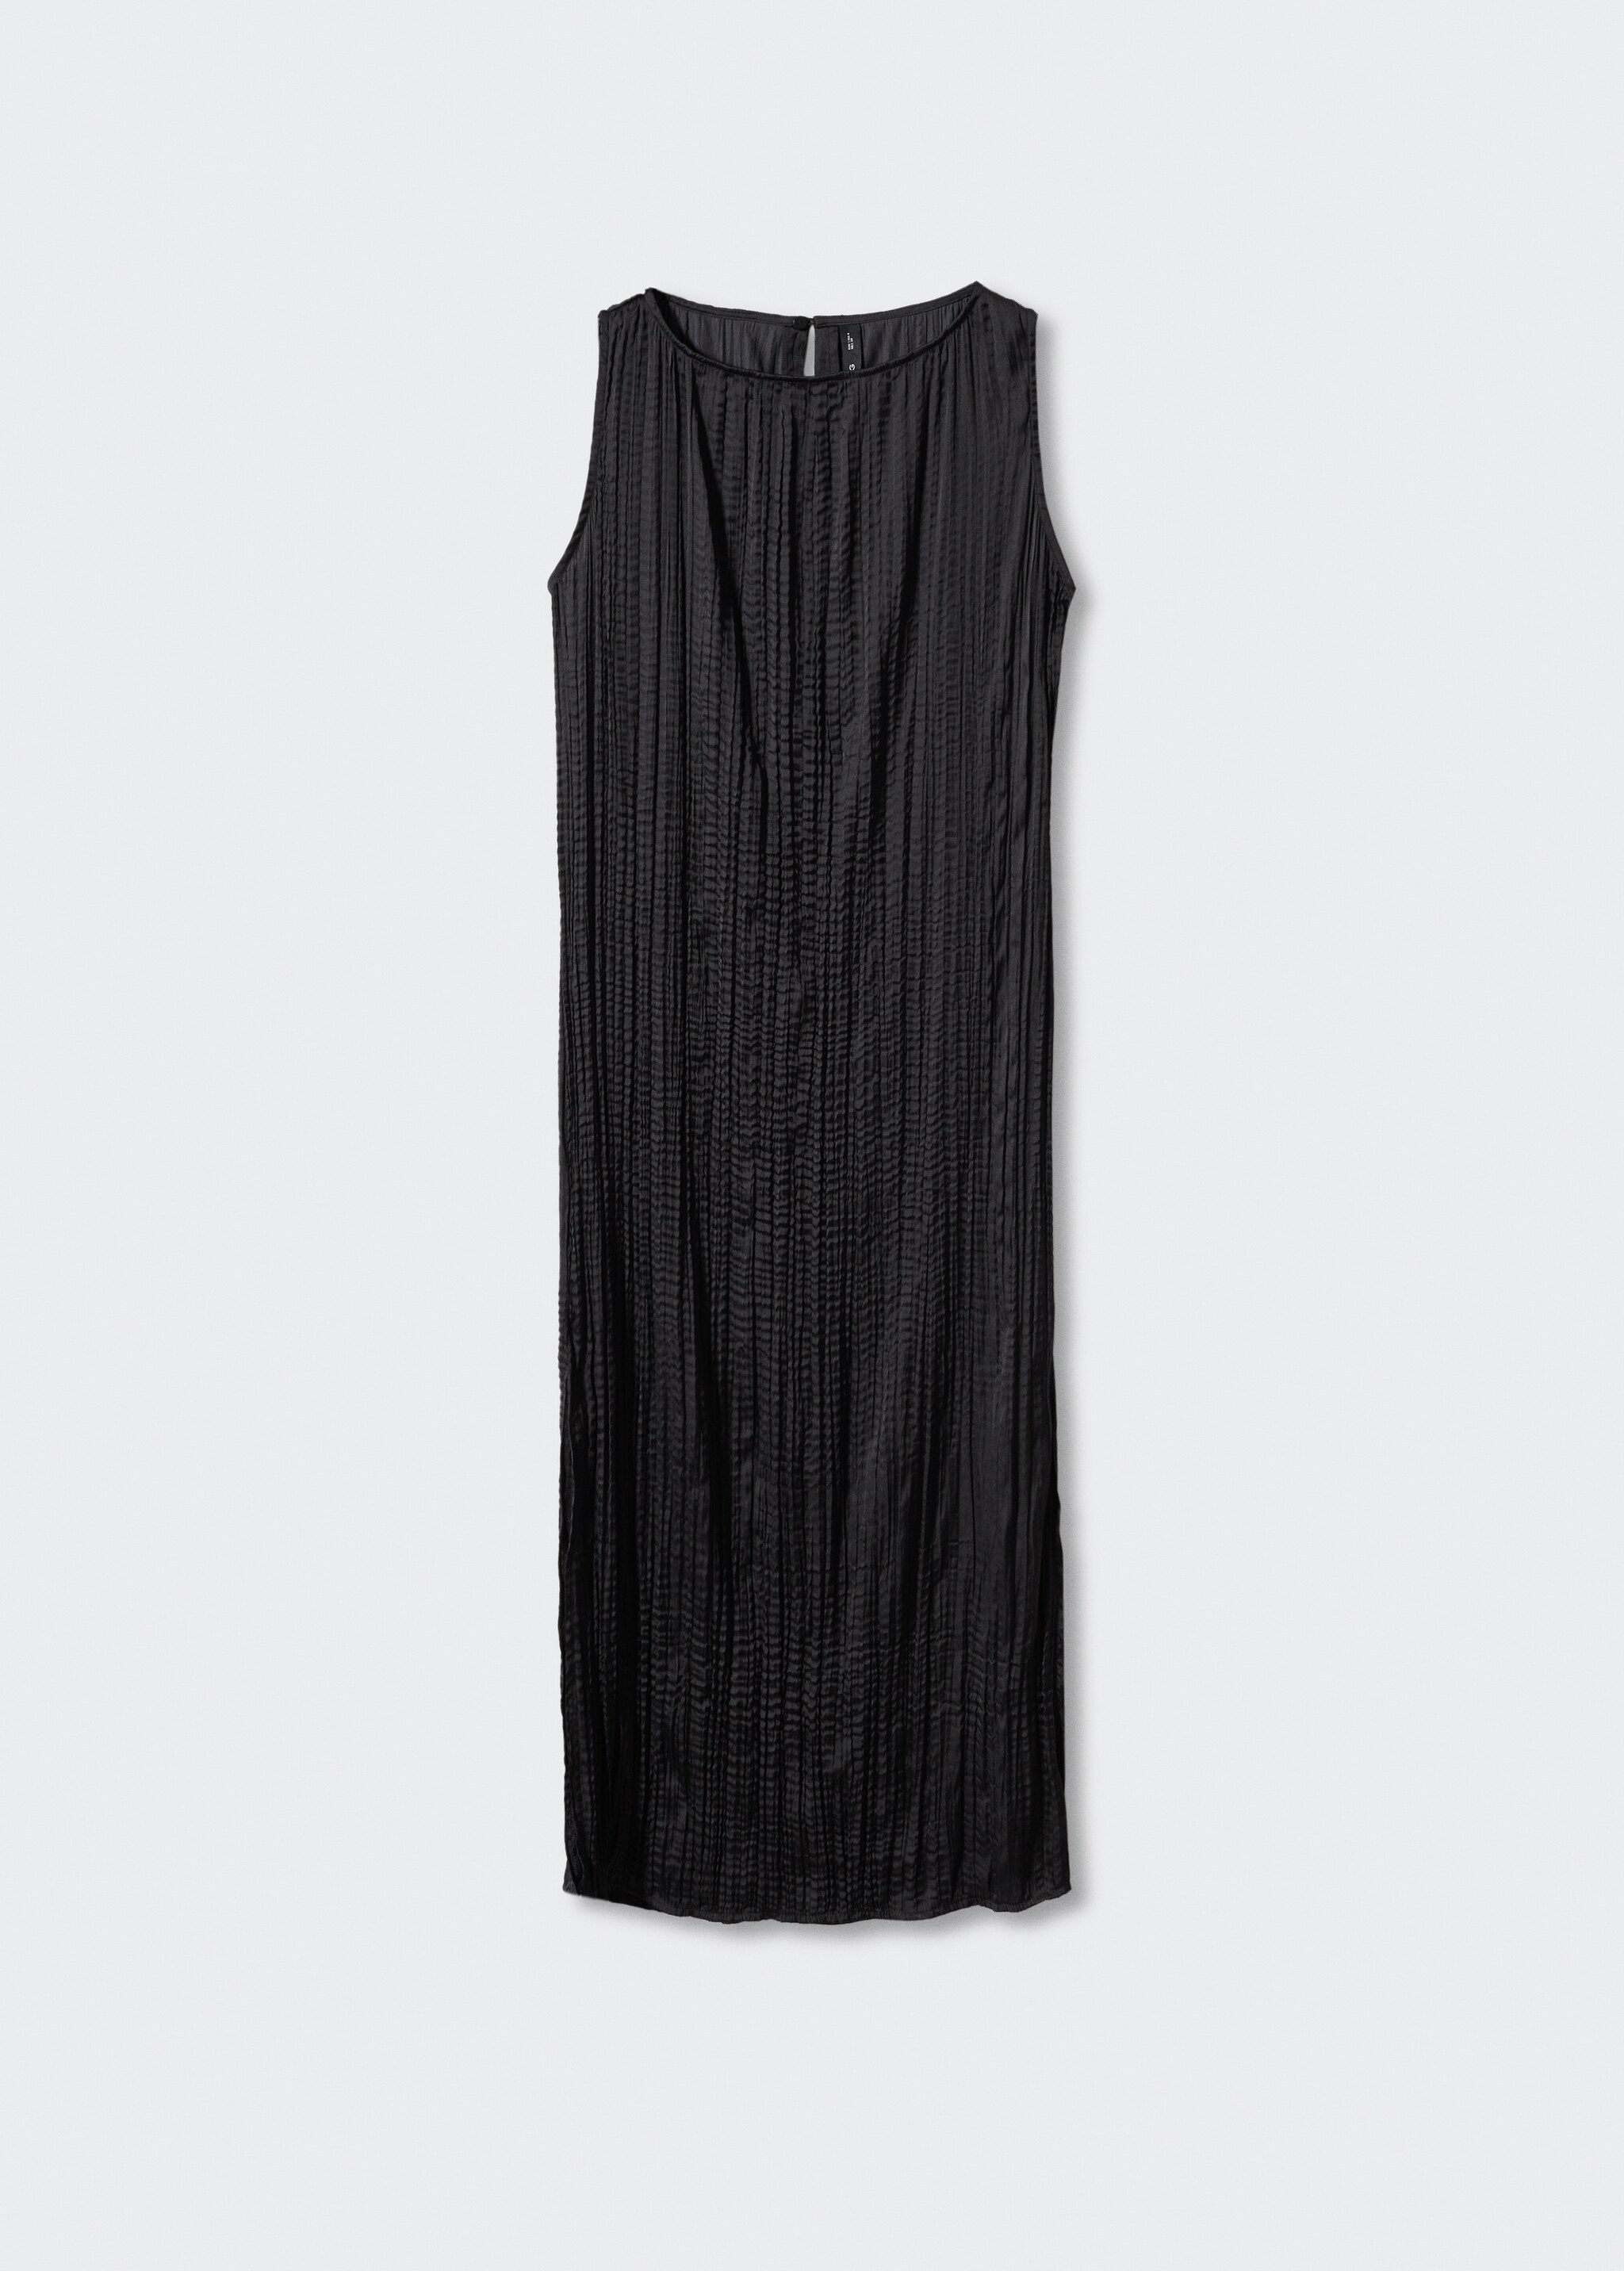 Vestido negro textura midi - Artículo sin modelo